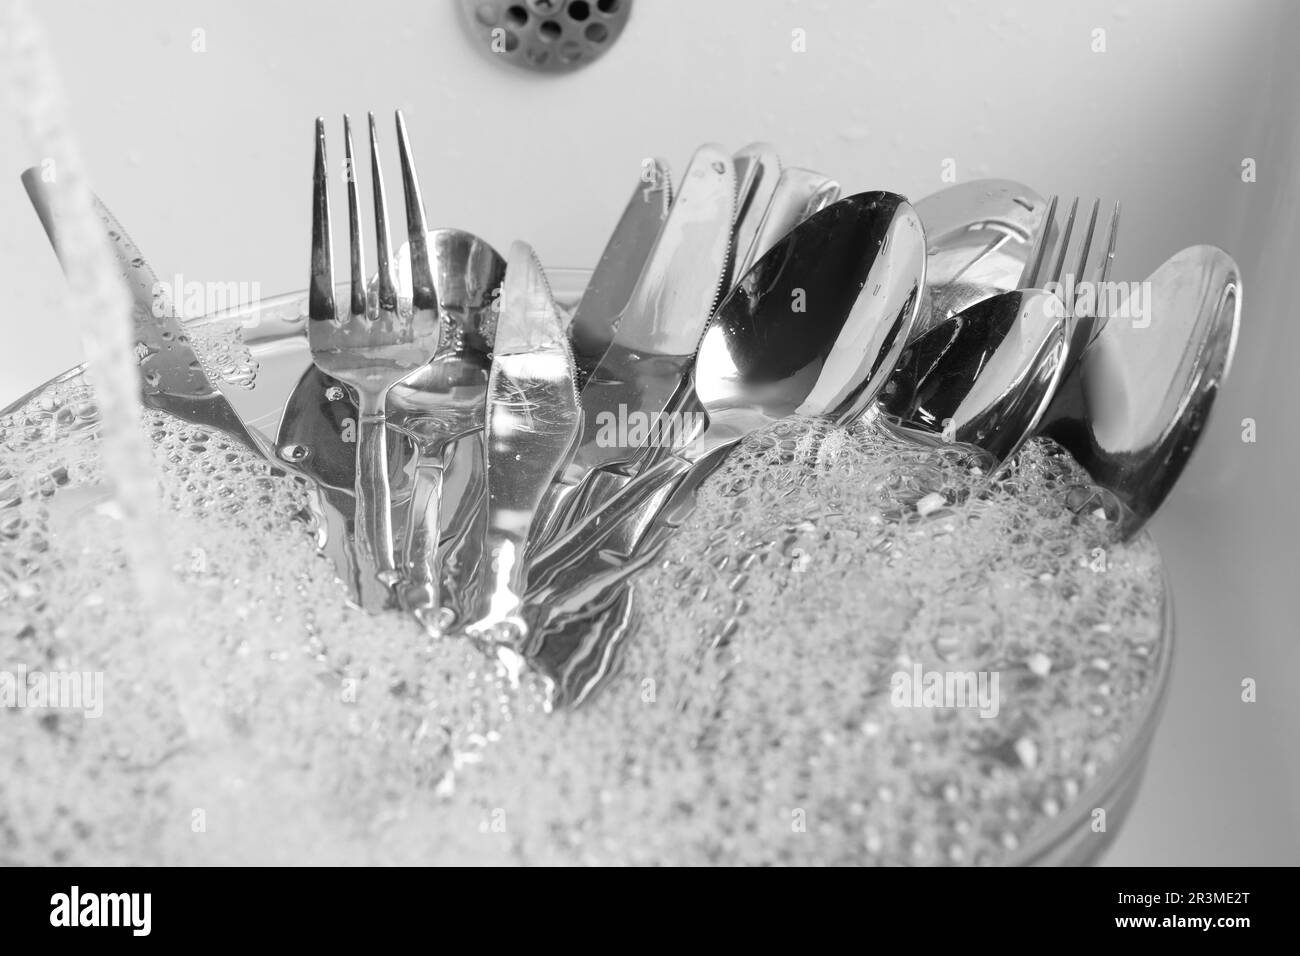 Lavare cucchiai d'argento, forchette e coltelli sotto il flusso d'acqua in lavello da cucina, primo piano Foto Stock